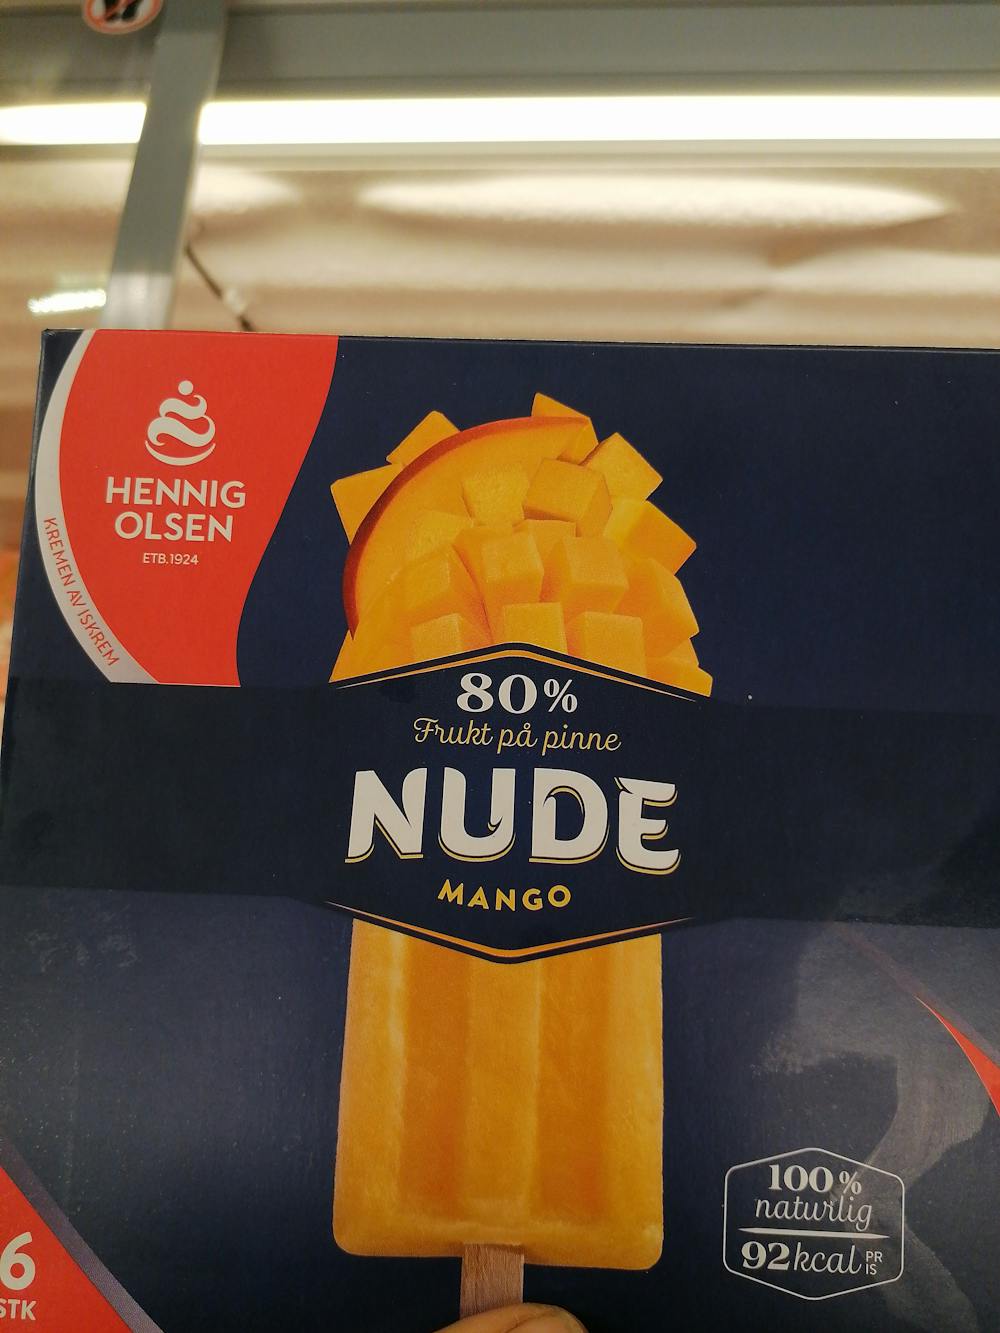 Nude mango, 80% frukt på pinne, Hennig Olsen